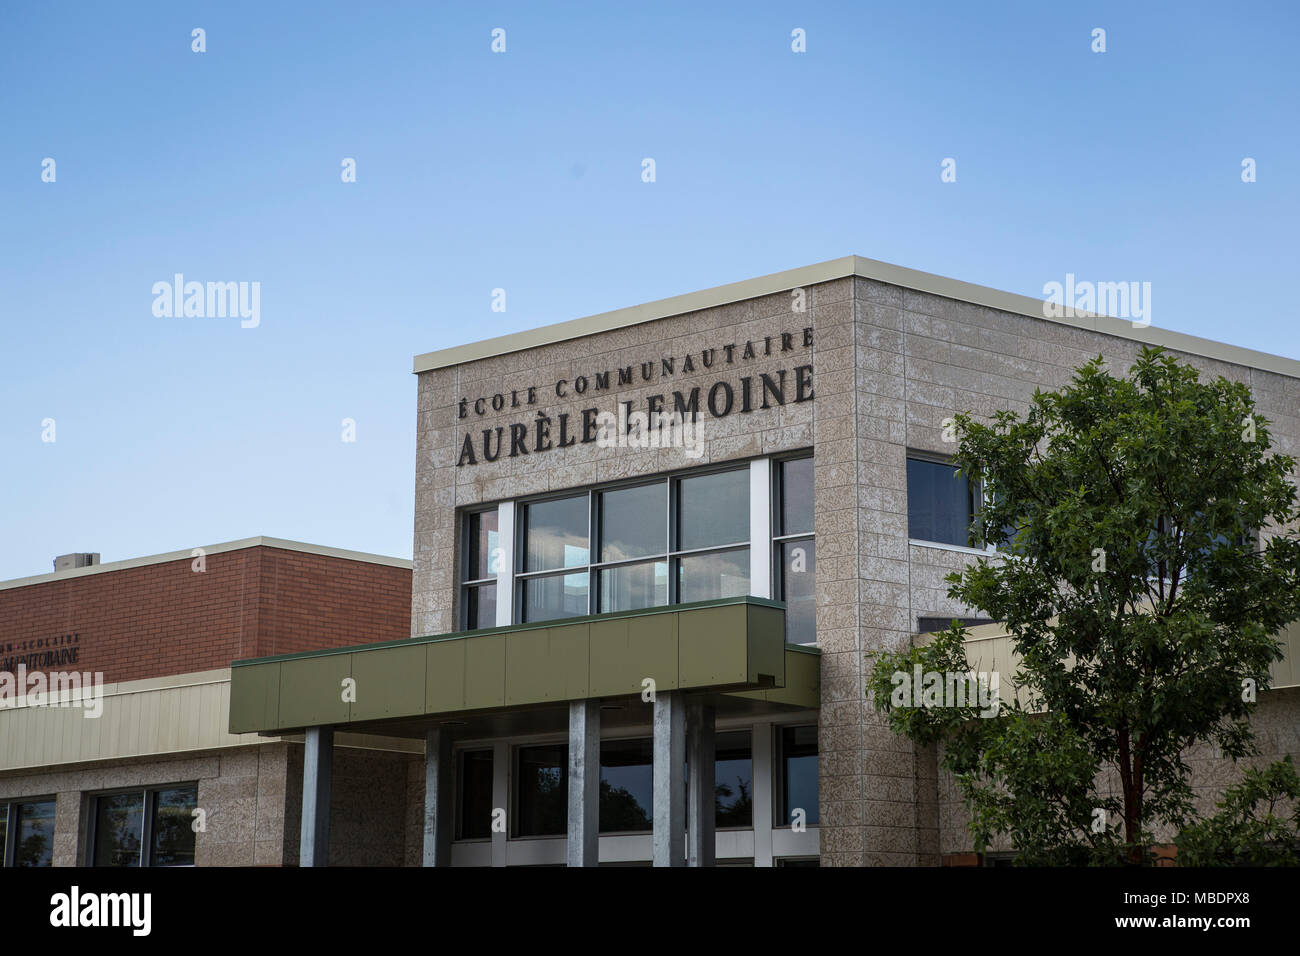 Ecole Communautaire Aurle-Lemoine francese scuola primaria è visto in Saint-Laurent, Manitoba, mercoledì 12 agosto, 2015. Laurent è un com bilingue Foto Stock